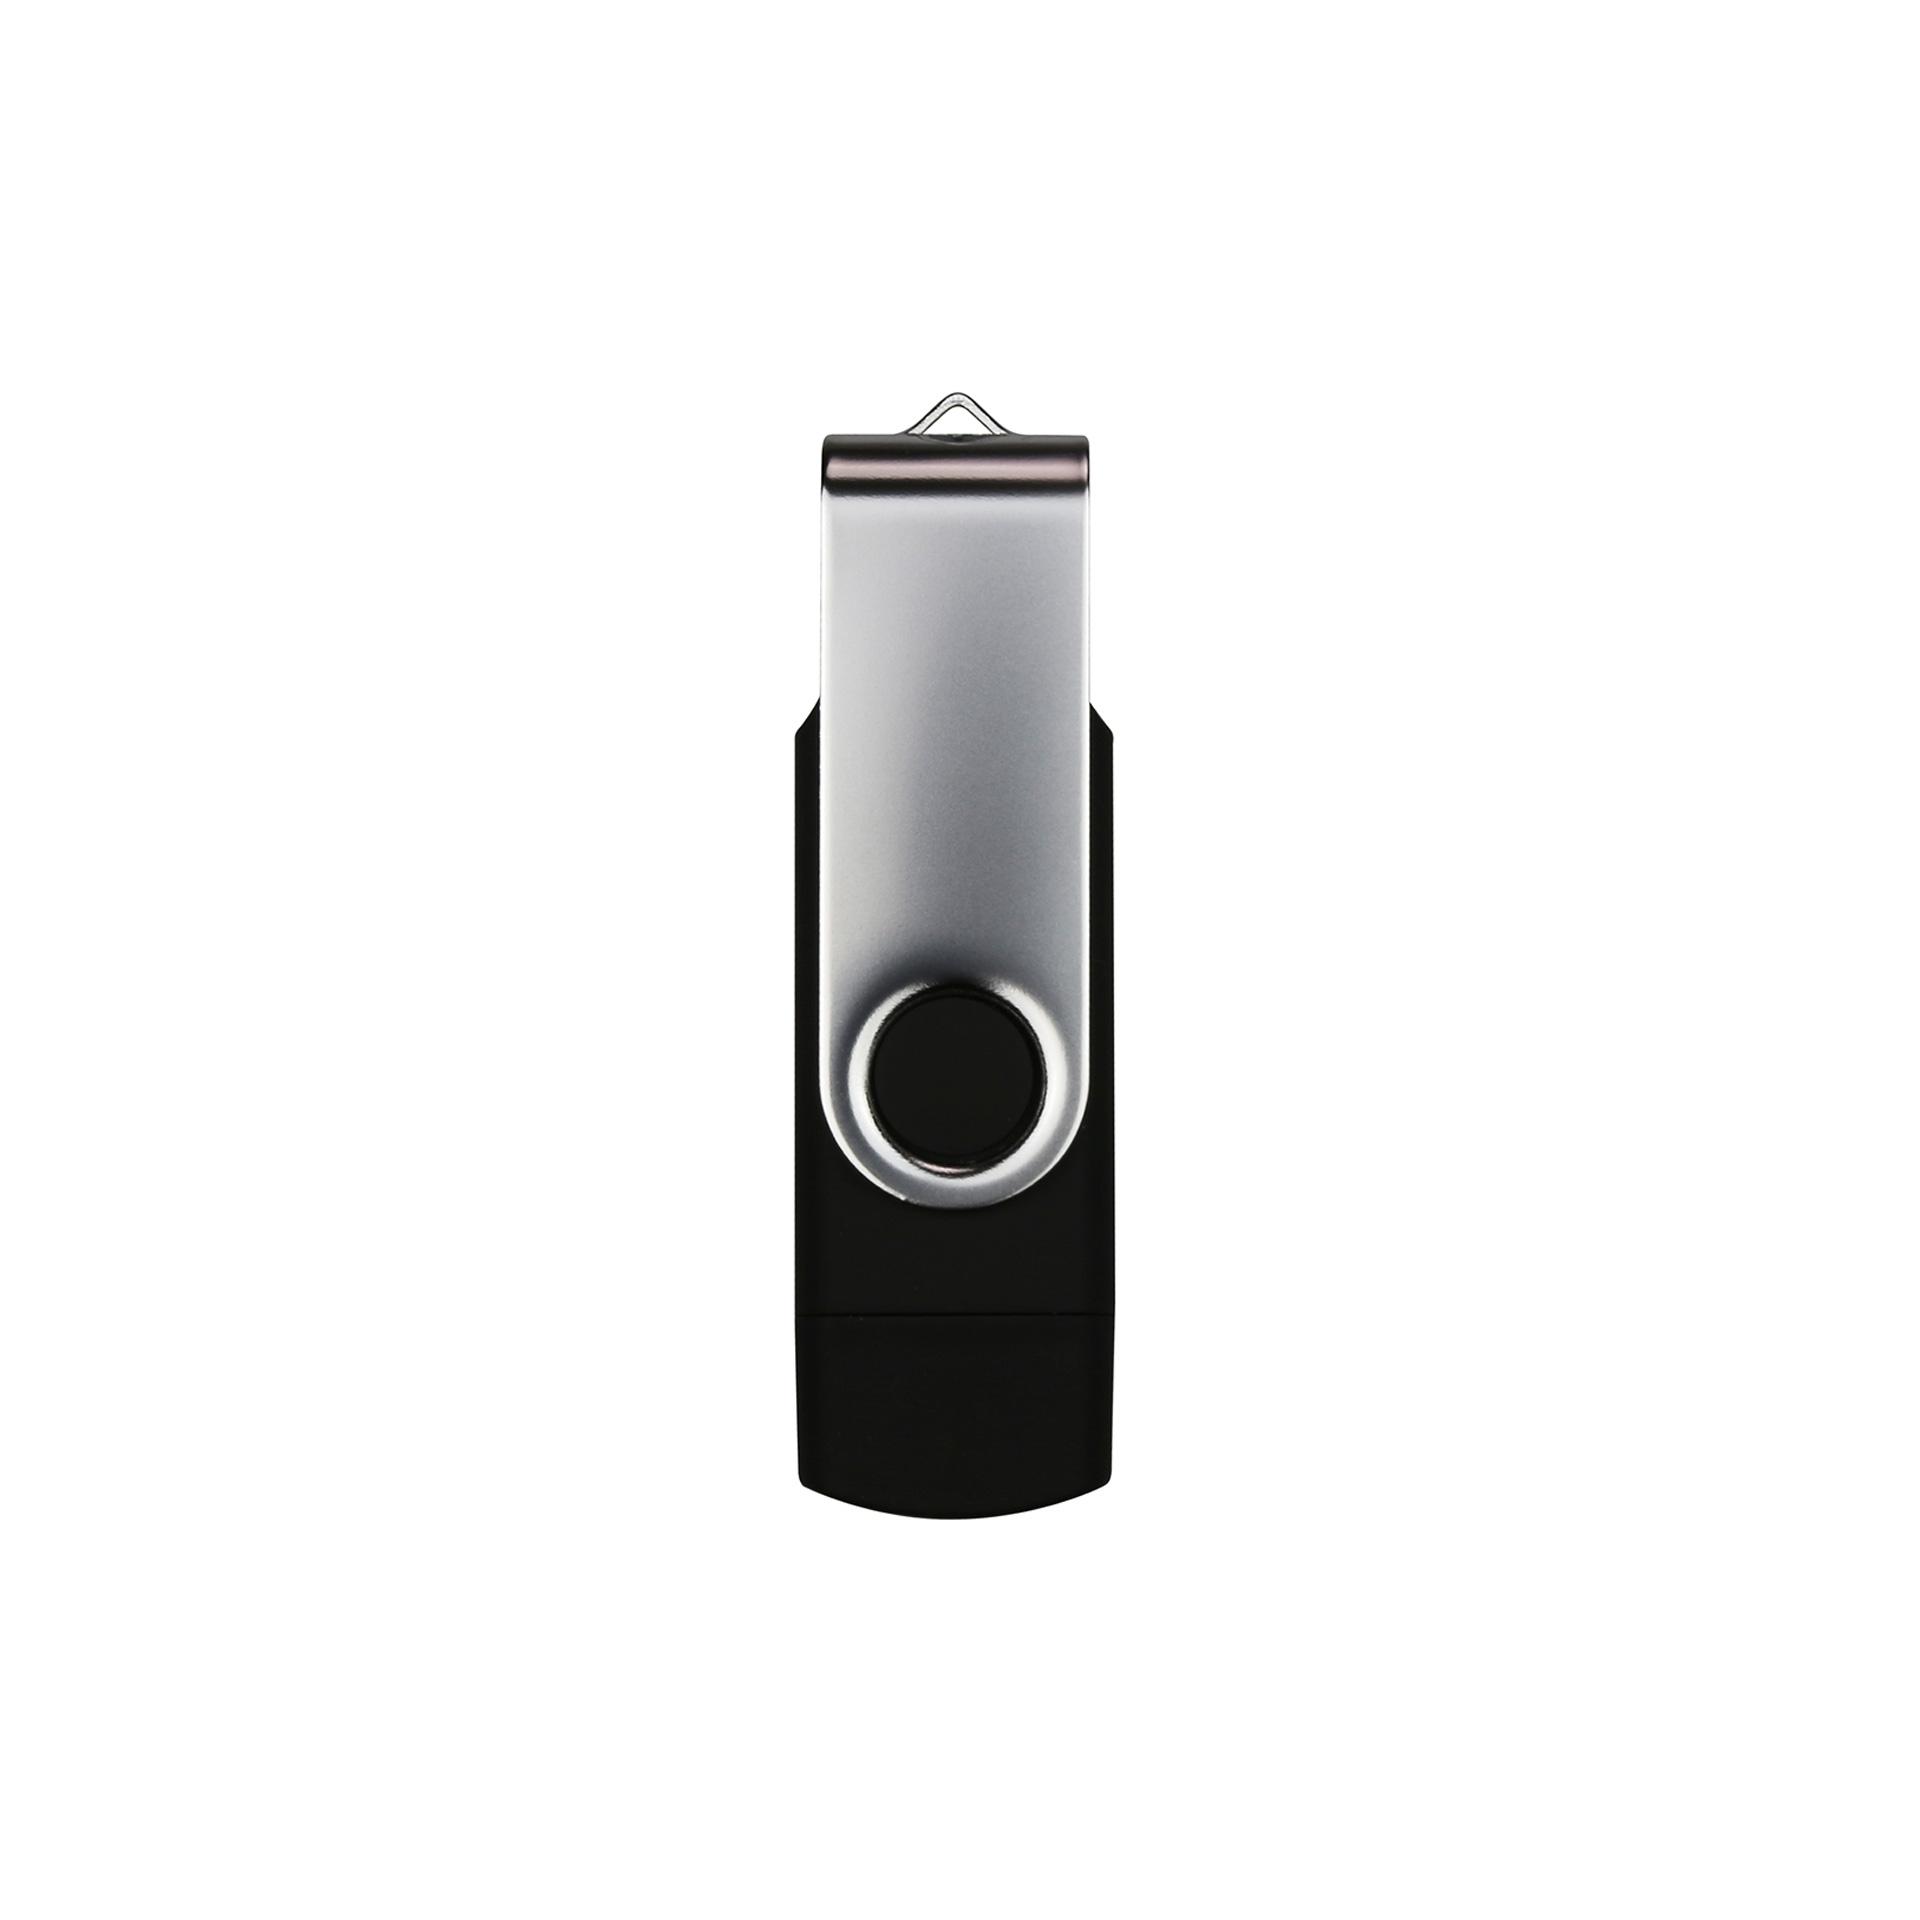 USB флаш памет Swivel, USB 3.0, 16 GB, Type-C OTG, черна